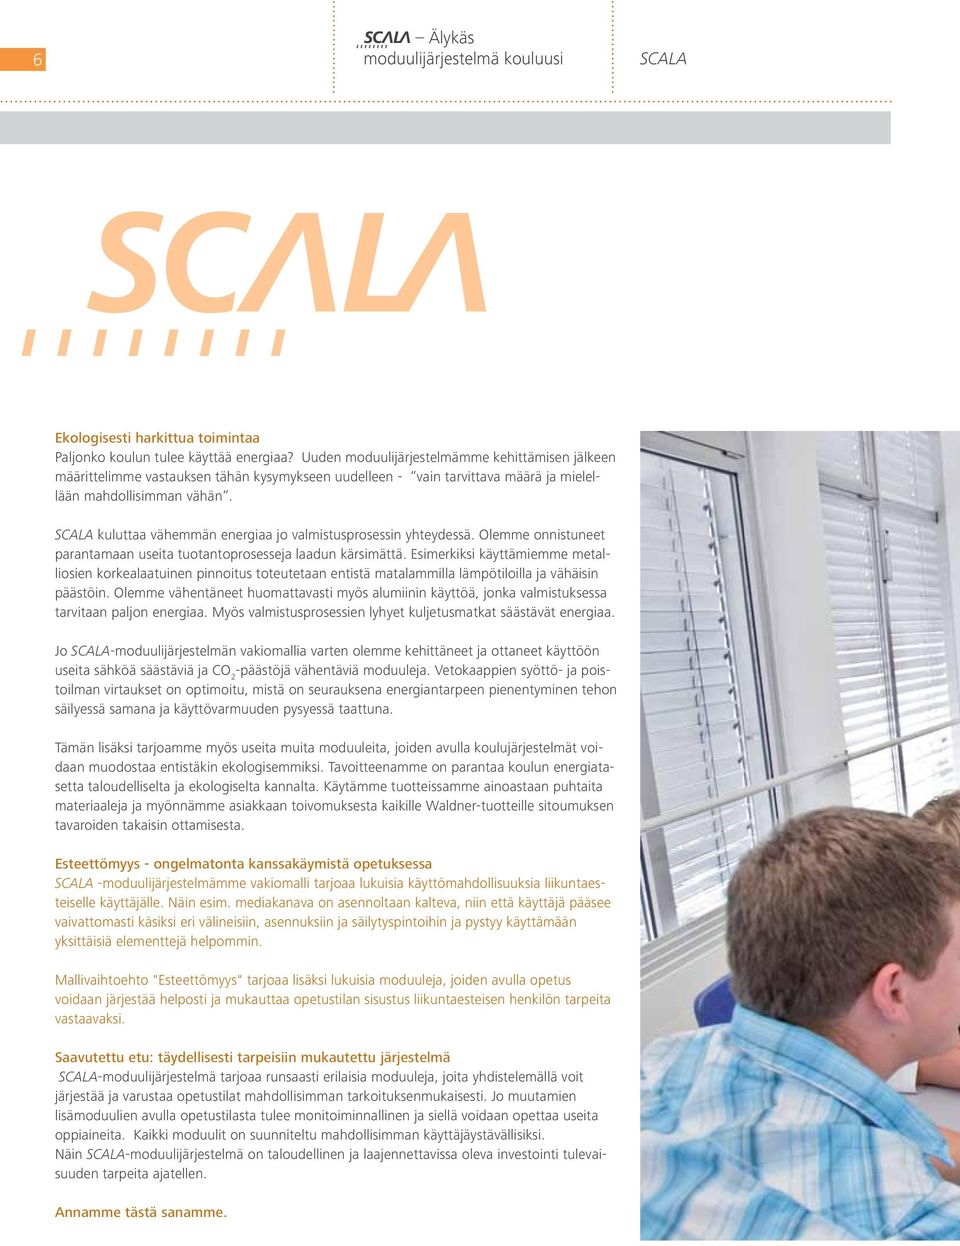 SCALA kuluttaa vähemmän energiaa jo valmistusprosessin yhteydessä. Olemme onnistuneet parantamaan useita tuotantoprosesseja laadun kärsimättä.